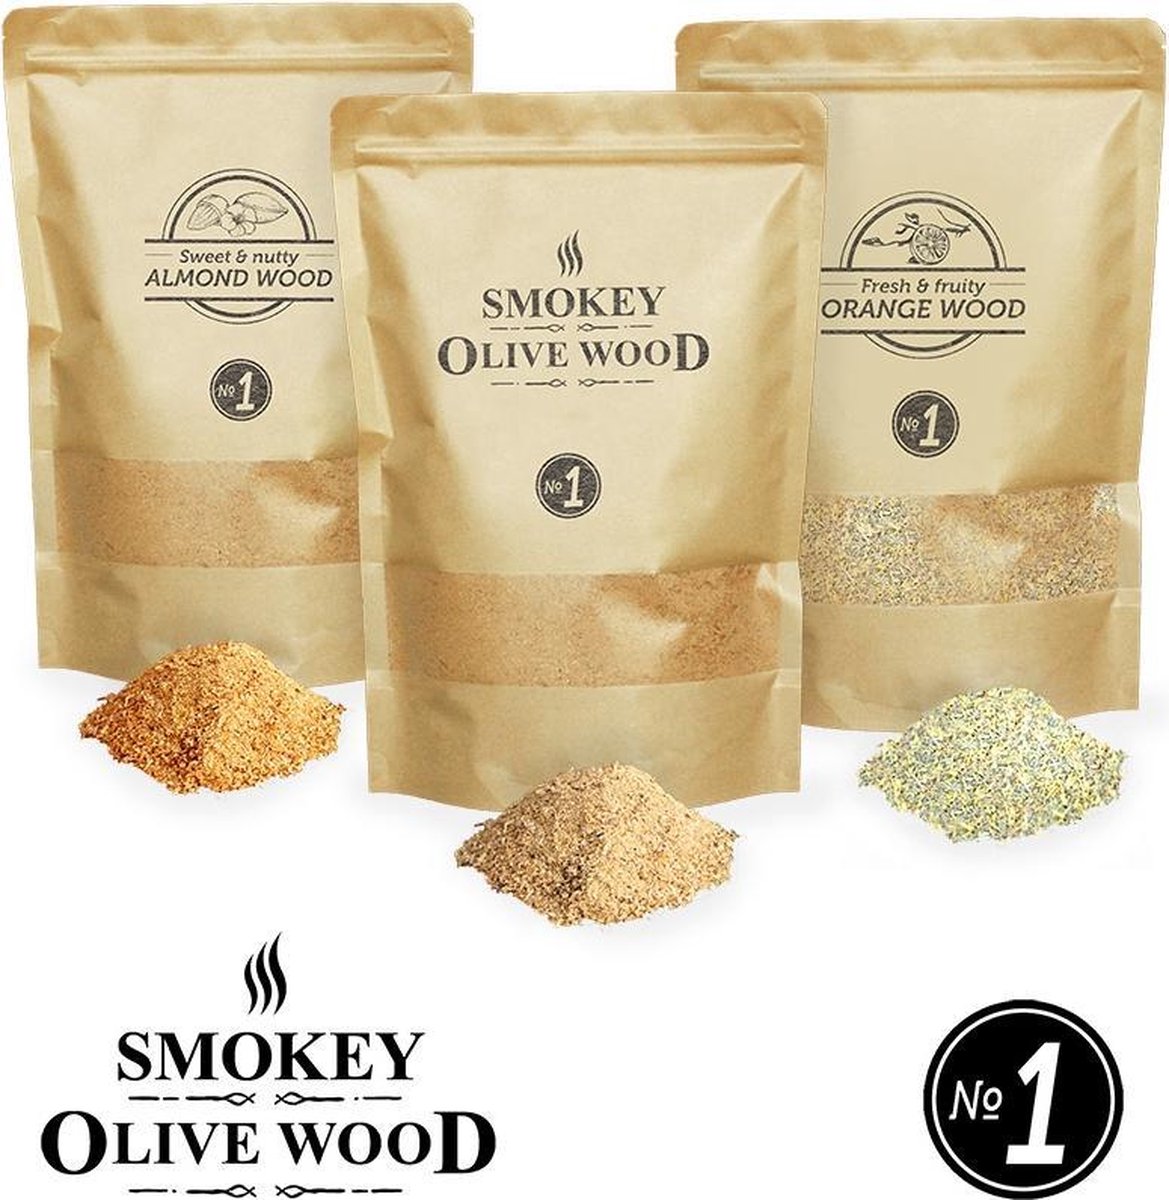 3X Smokey Olive Wood - Rookmot - 1,5L, 50% olijfhout en 50% Beuk + 1,5L Sinaasappel + Amandel 1,5L - Rookmeel fijn ø 0-1mm - Smokey Olive Wood